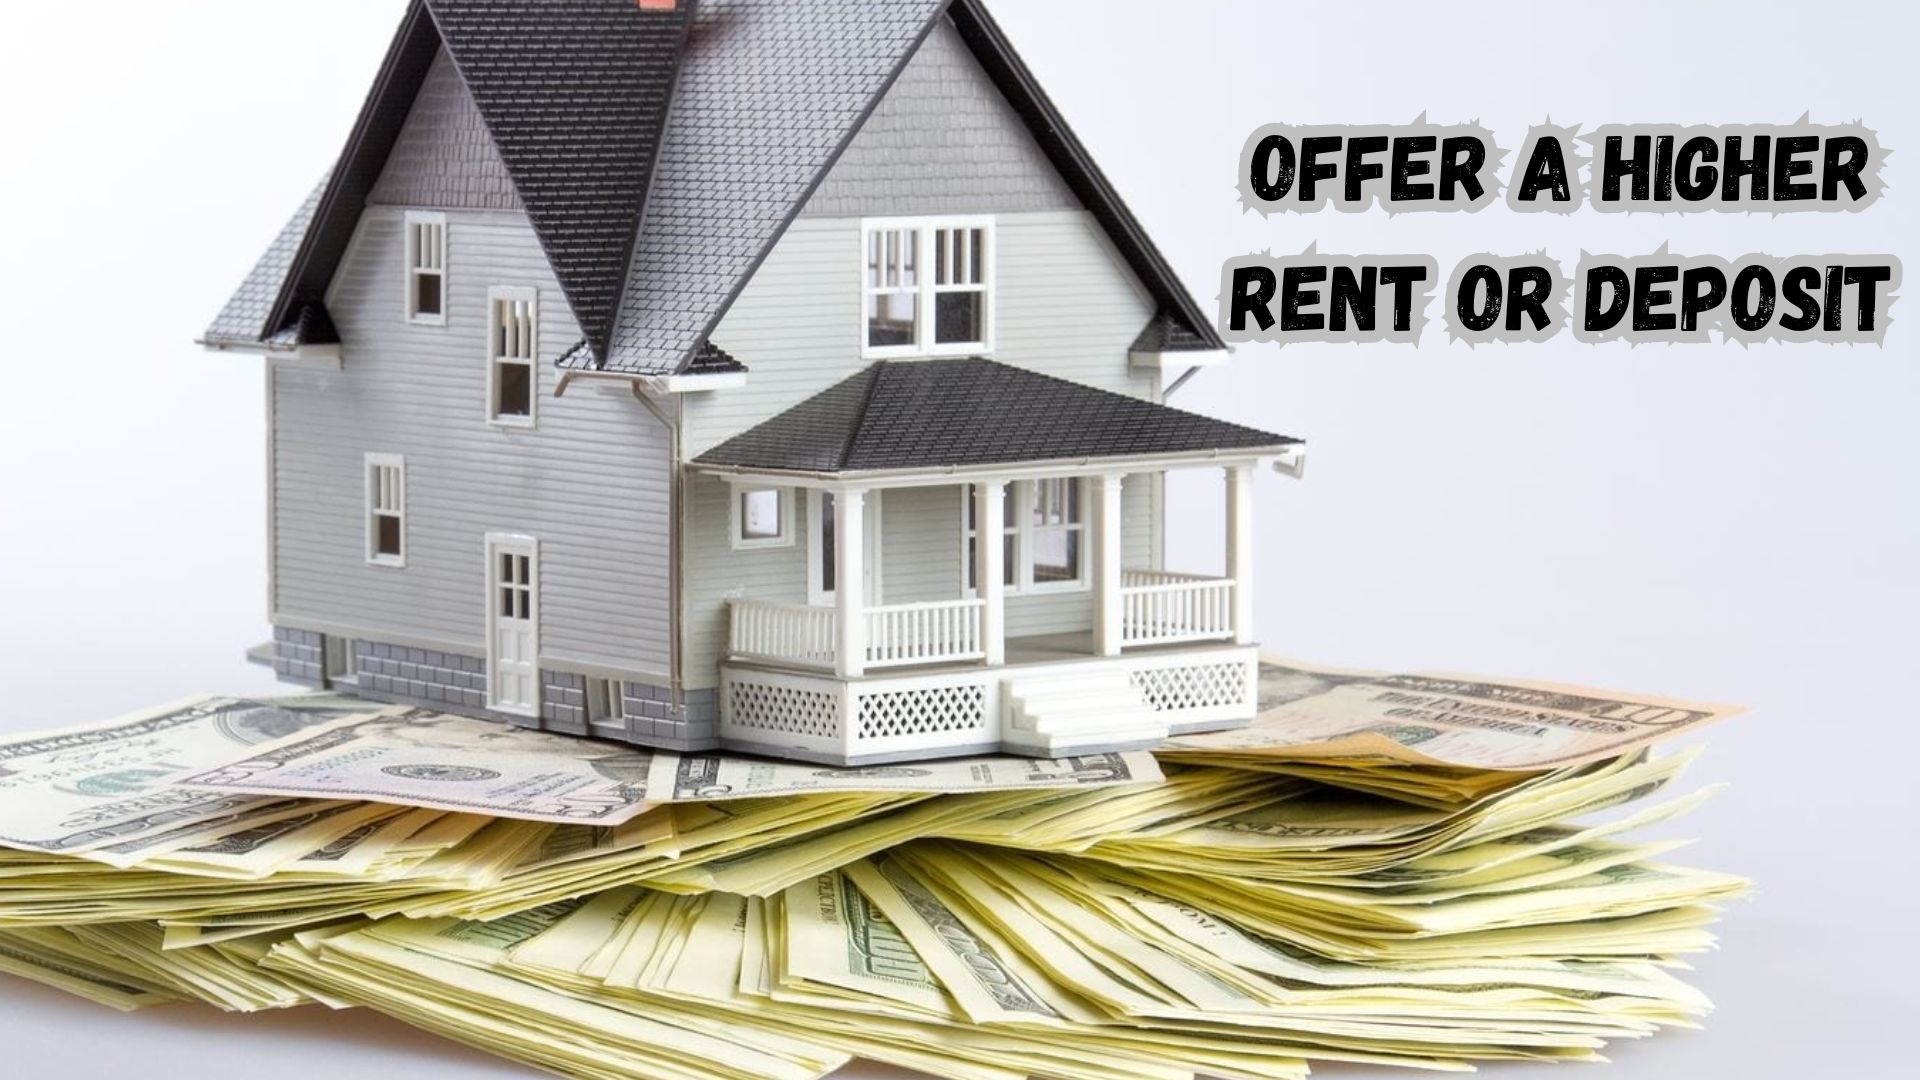 Offer a Higher Rent or Deposit.